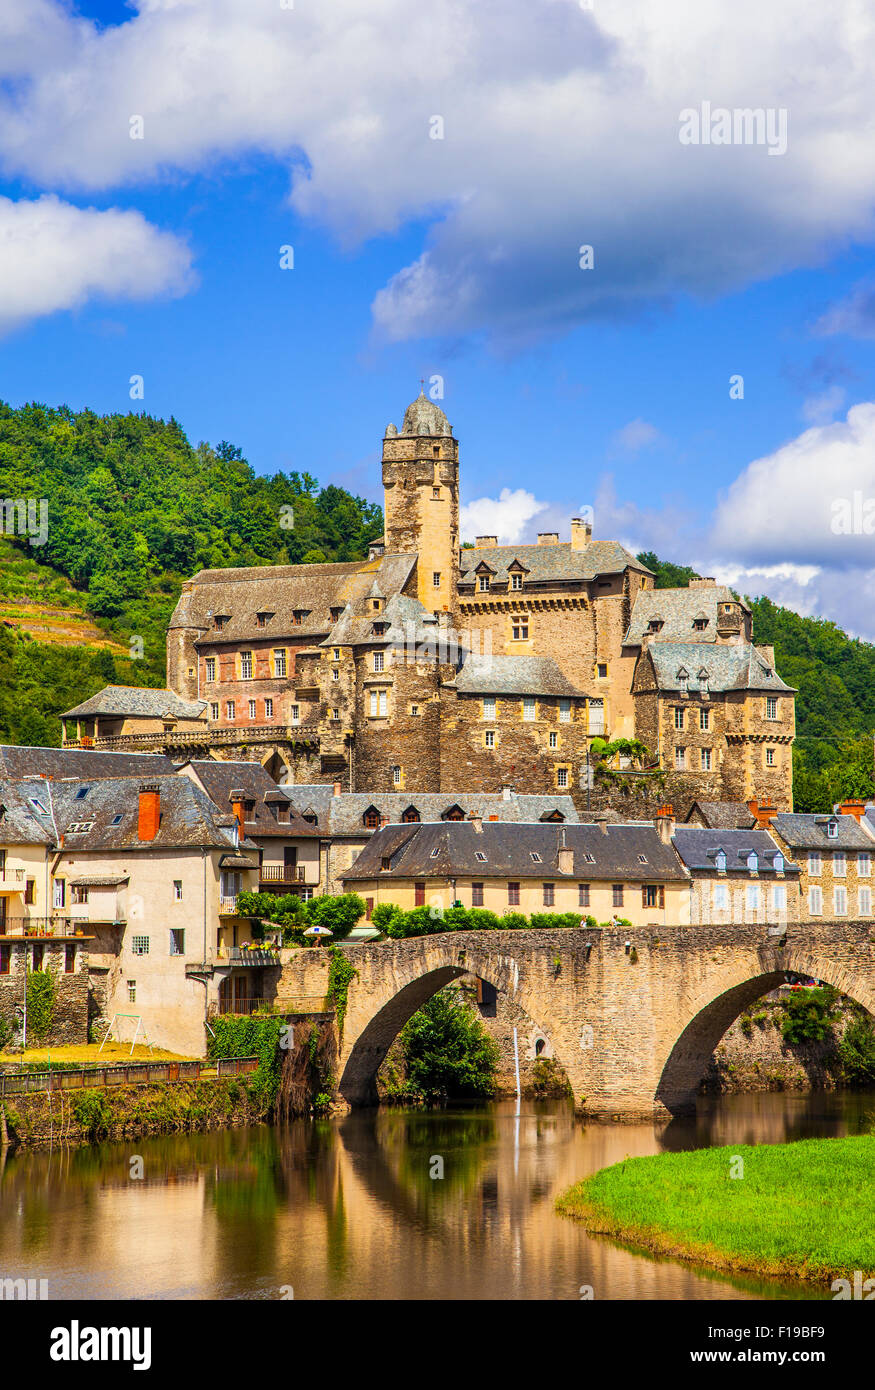 Estaing - un des plus beaux villages de France (Aveyron) Banque D'Images